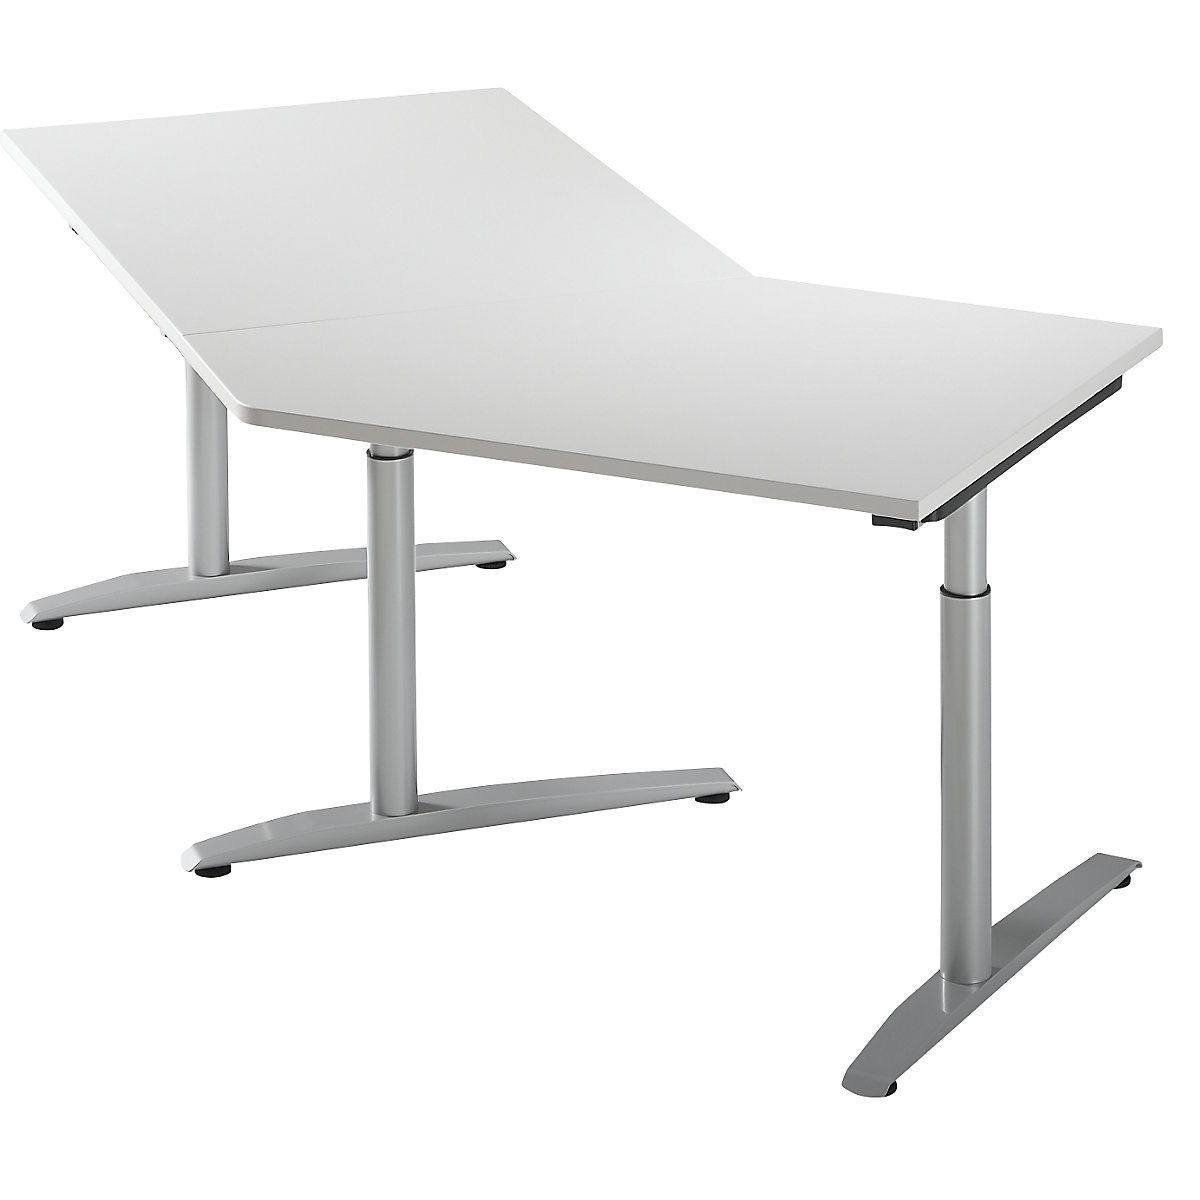 Priključni stol, namještanje visine 650 - 850 mm HANNA